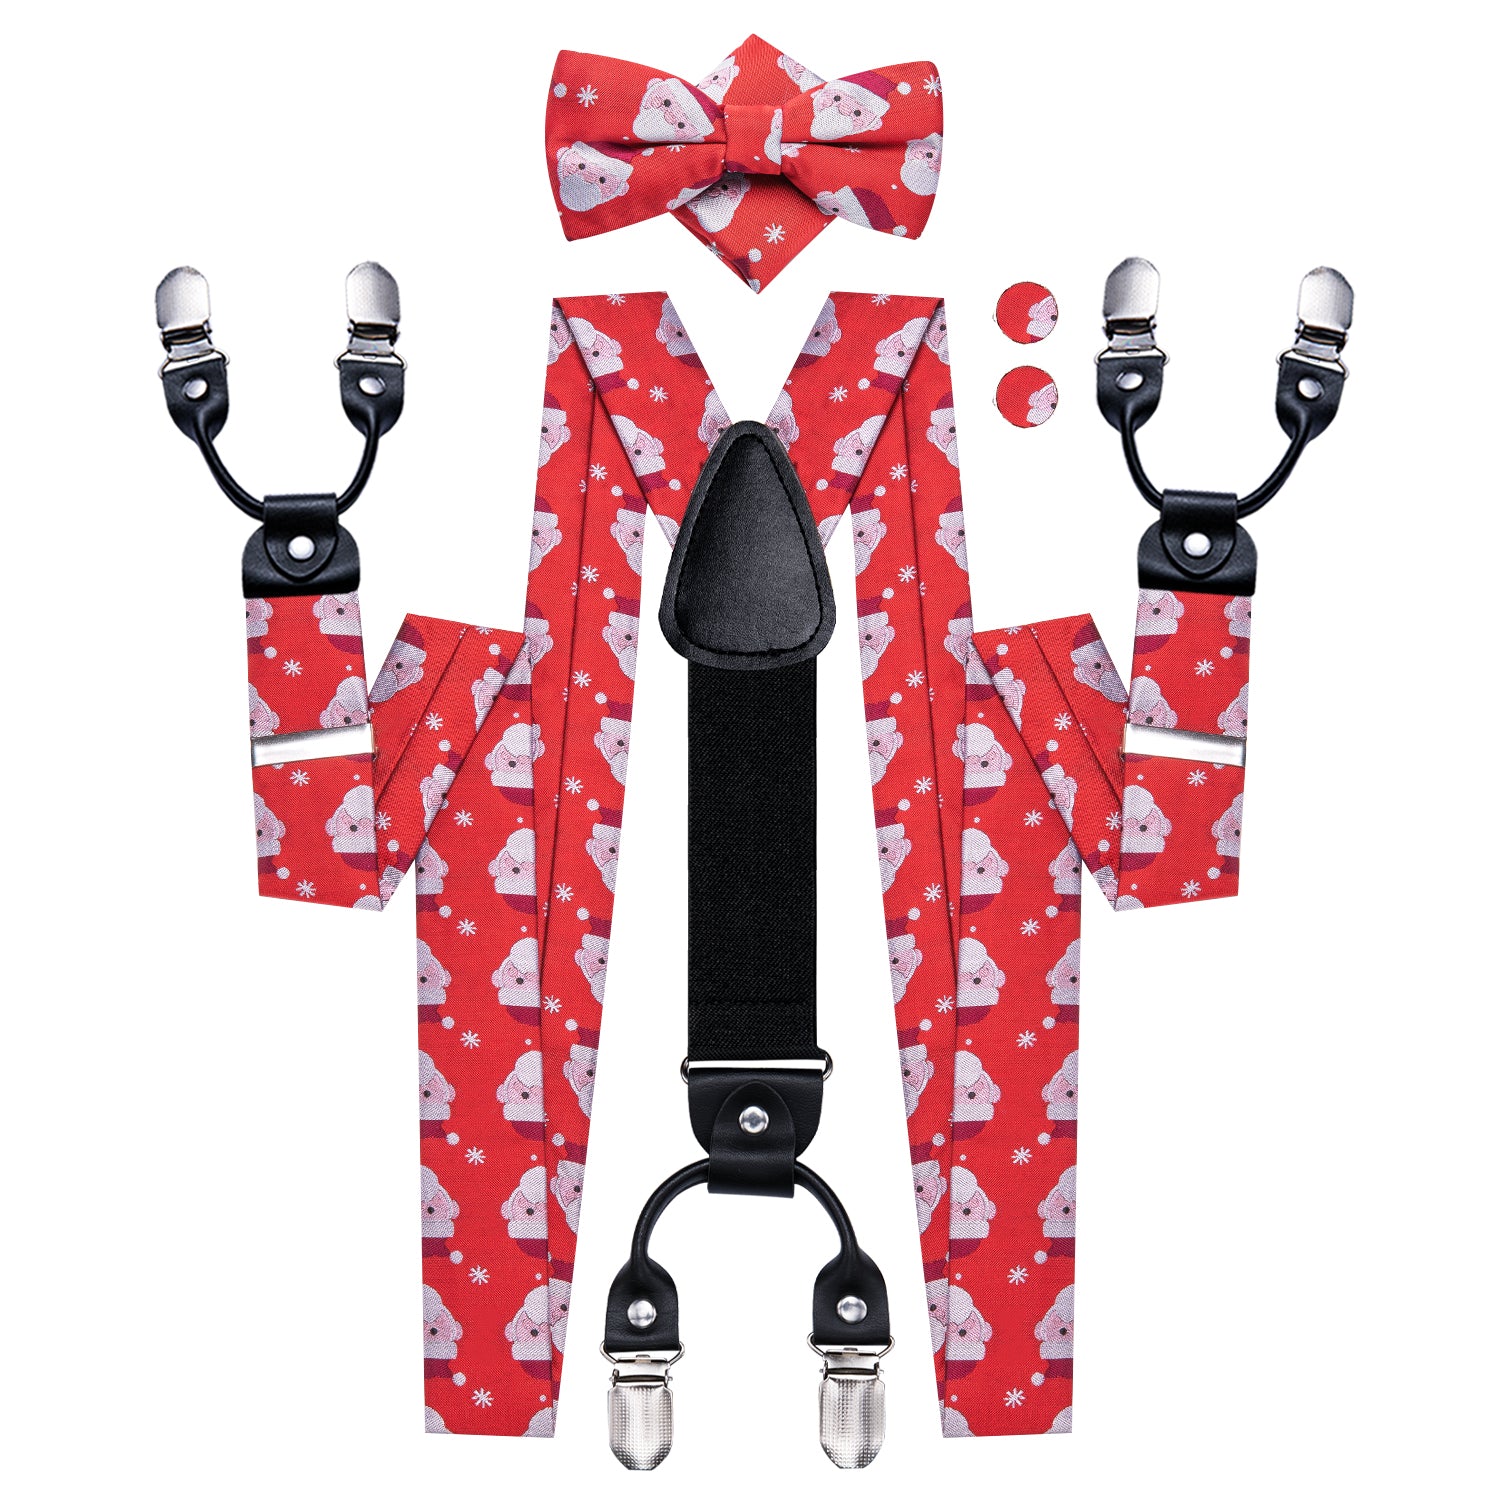 Red Christmas Snowman Suspender Bowtie Hanky Cufflinks Set